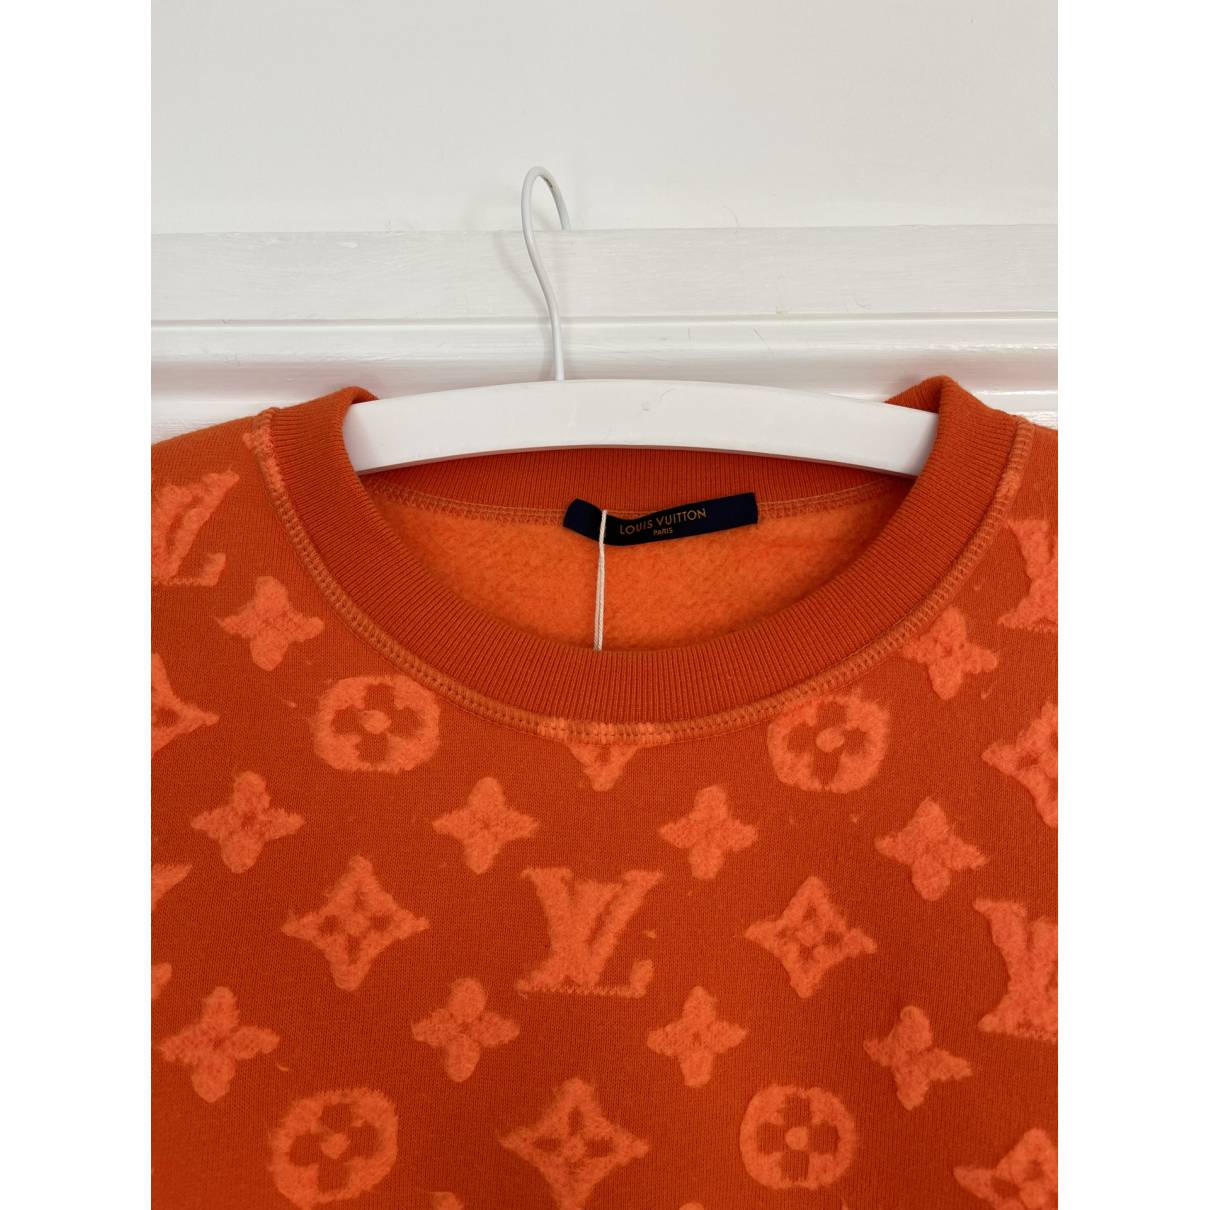 Sweatshirt Louis Vuitton Orange size M International in Other - 19313532